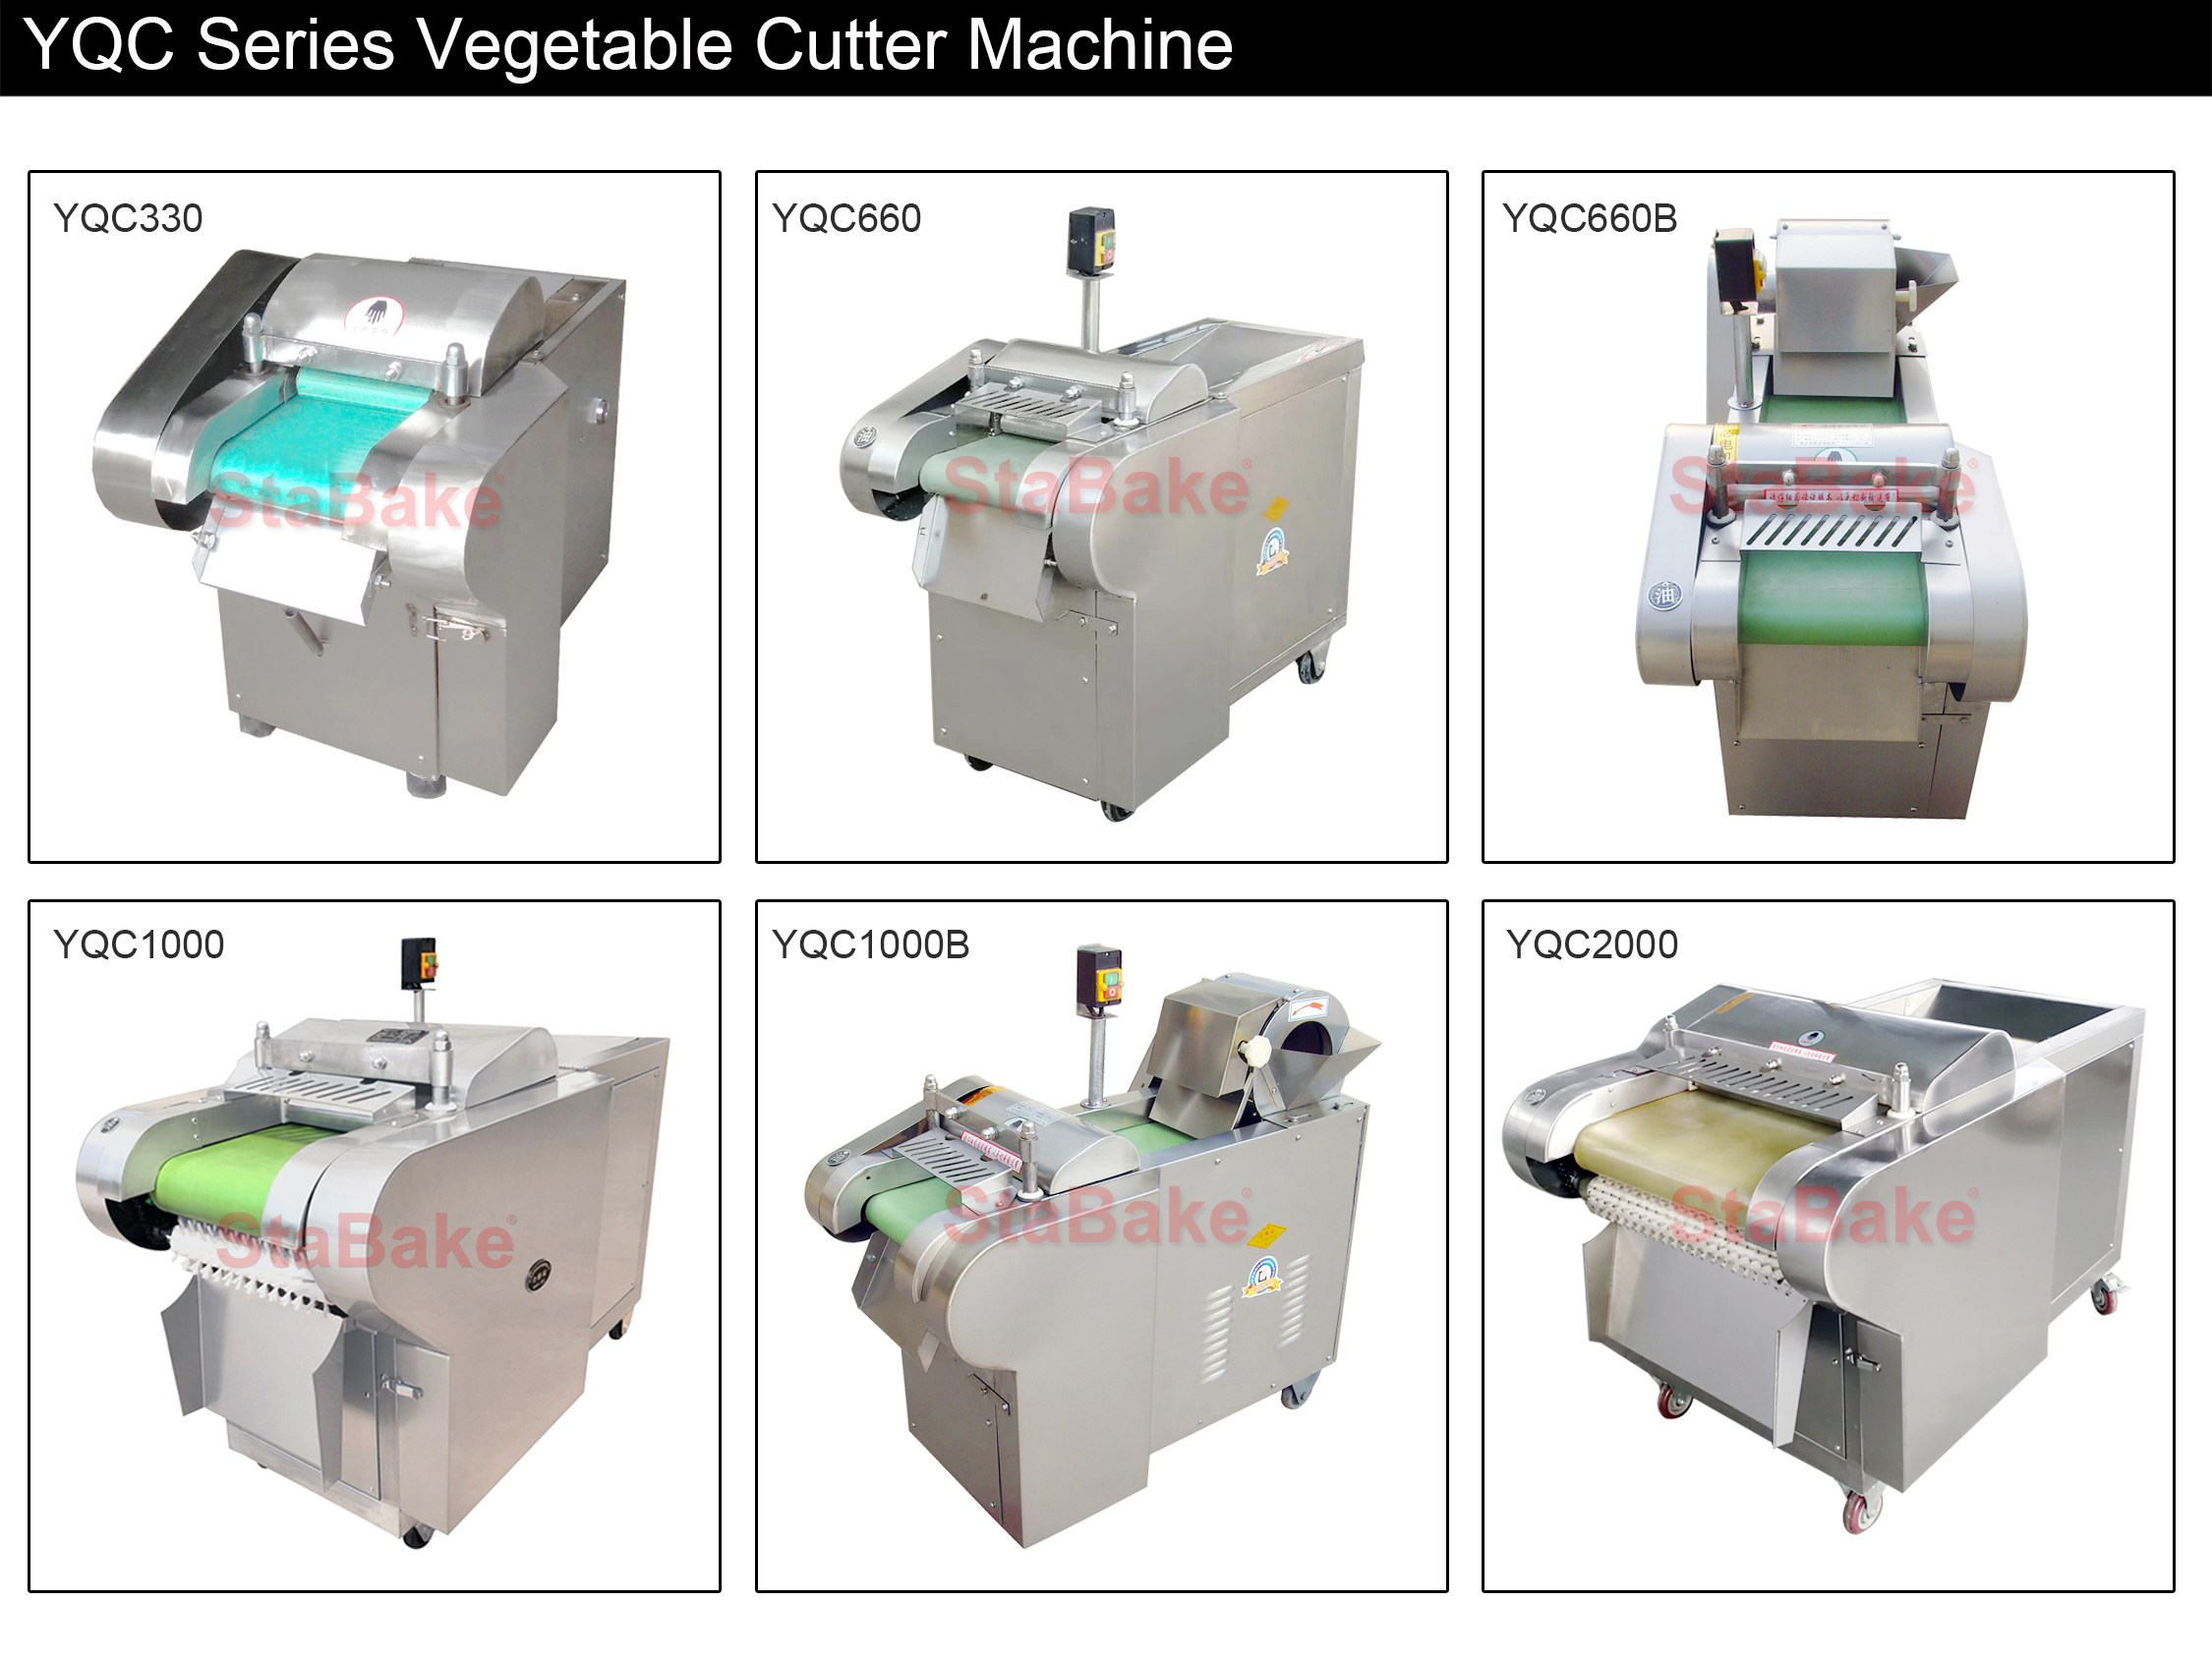 YQC Sereis Vegetable Cutter Machine